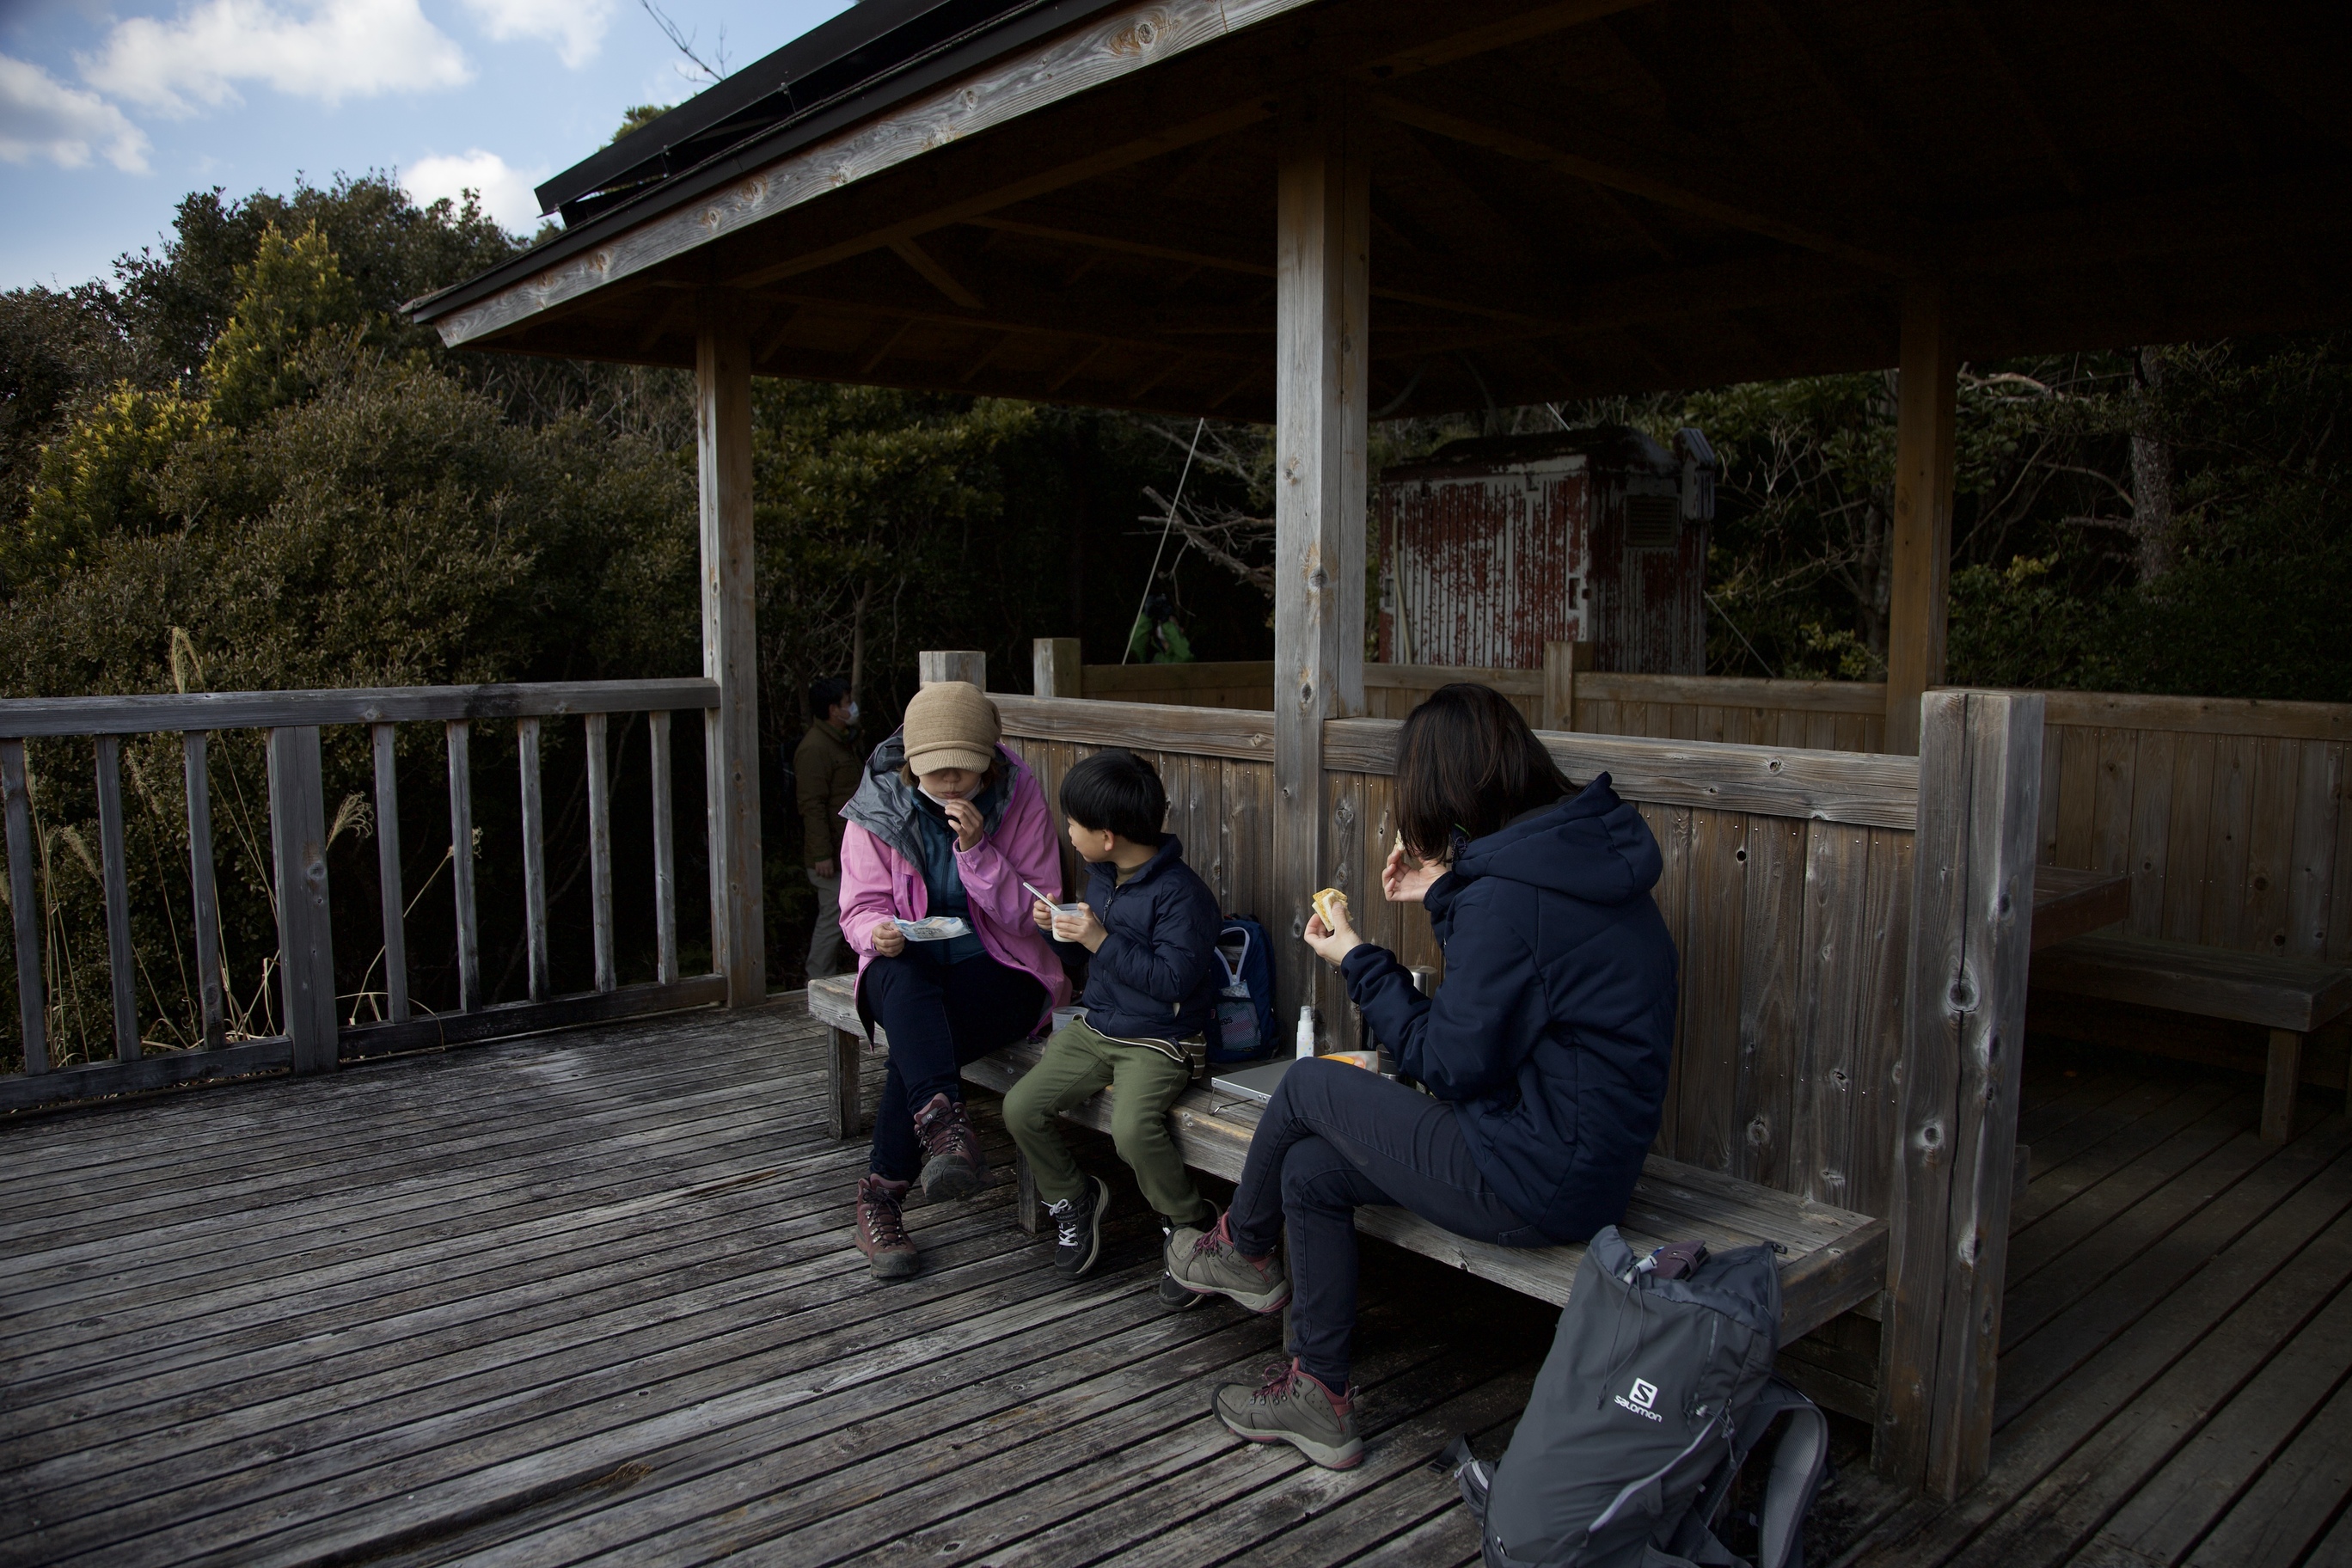 浅間山（せんげんさん）展望台で、家族連れが休憩している写真です。登山姿の大人2人と子ども1人が、東屋の外のベンチに座り、軽食をとっています。